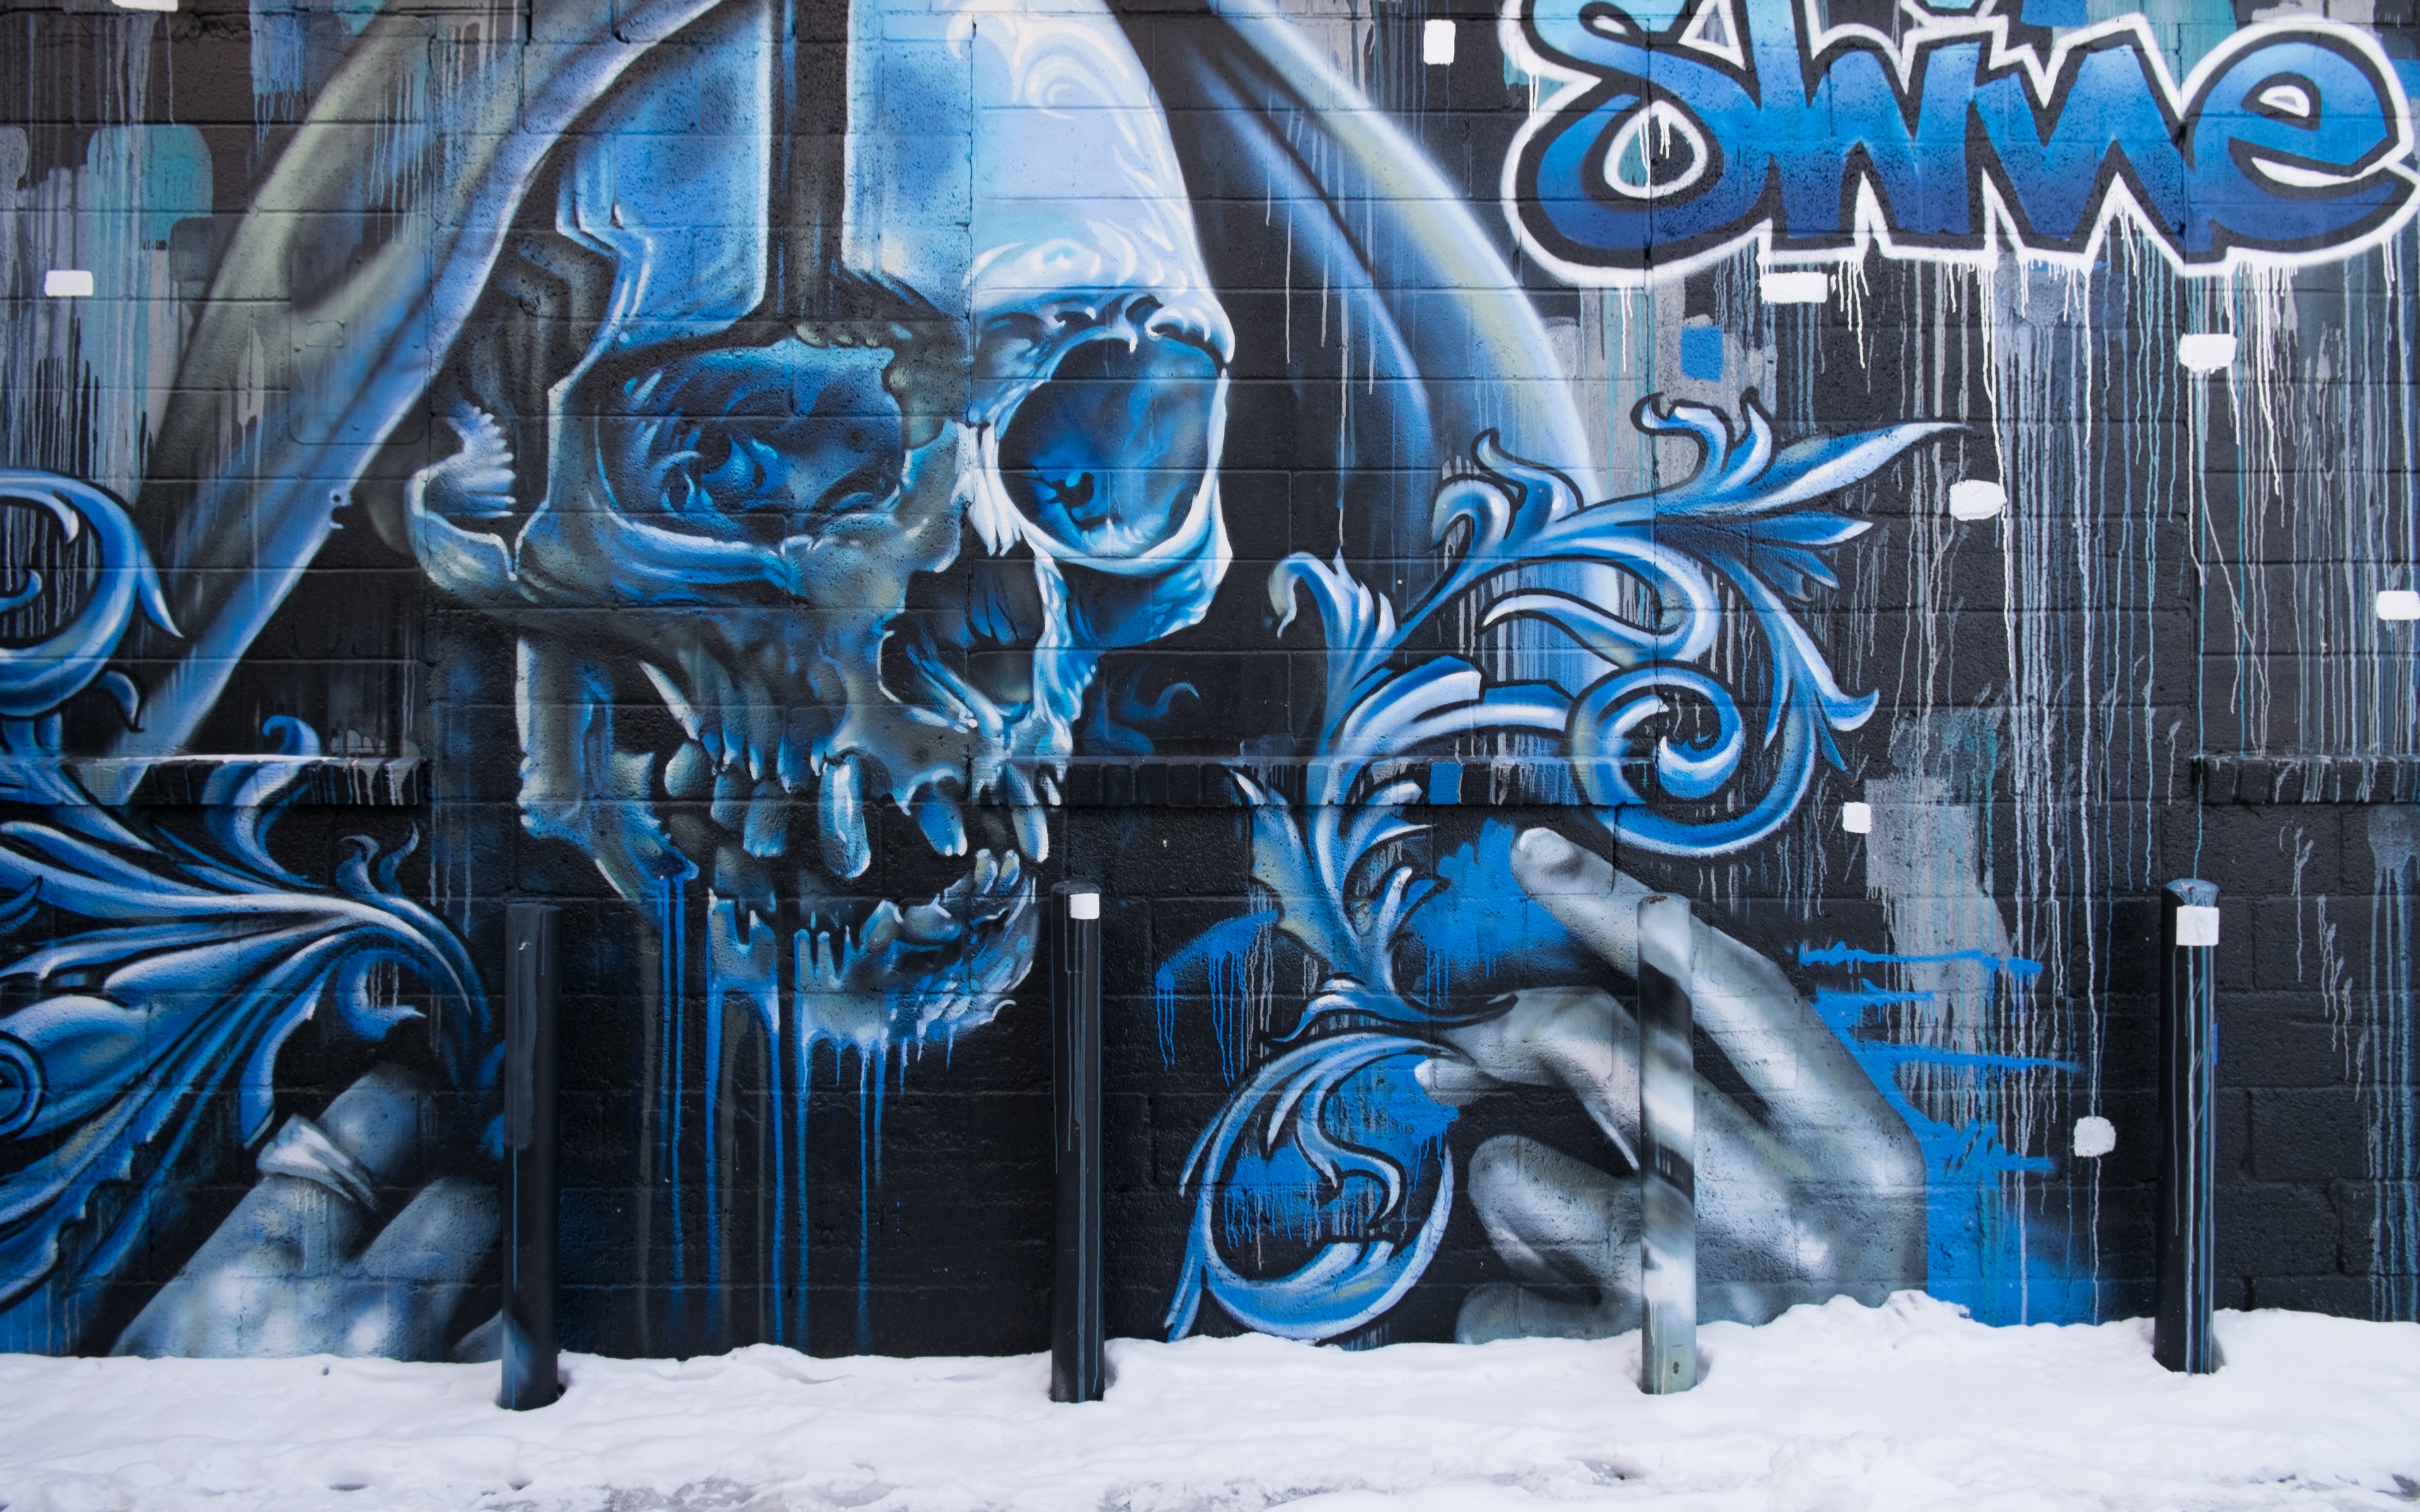 Wallpaper Skull, Graffiti, Street Art, Wall - Street Art Graffiti  Wallpapers 4k - 3840x2400 Wallpaper 